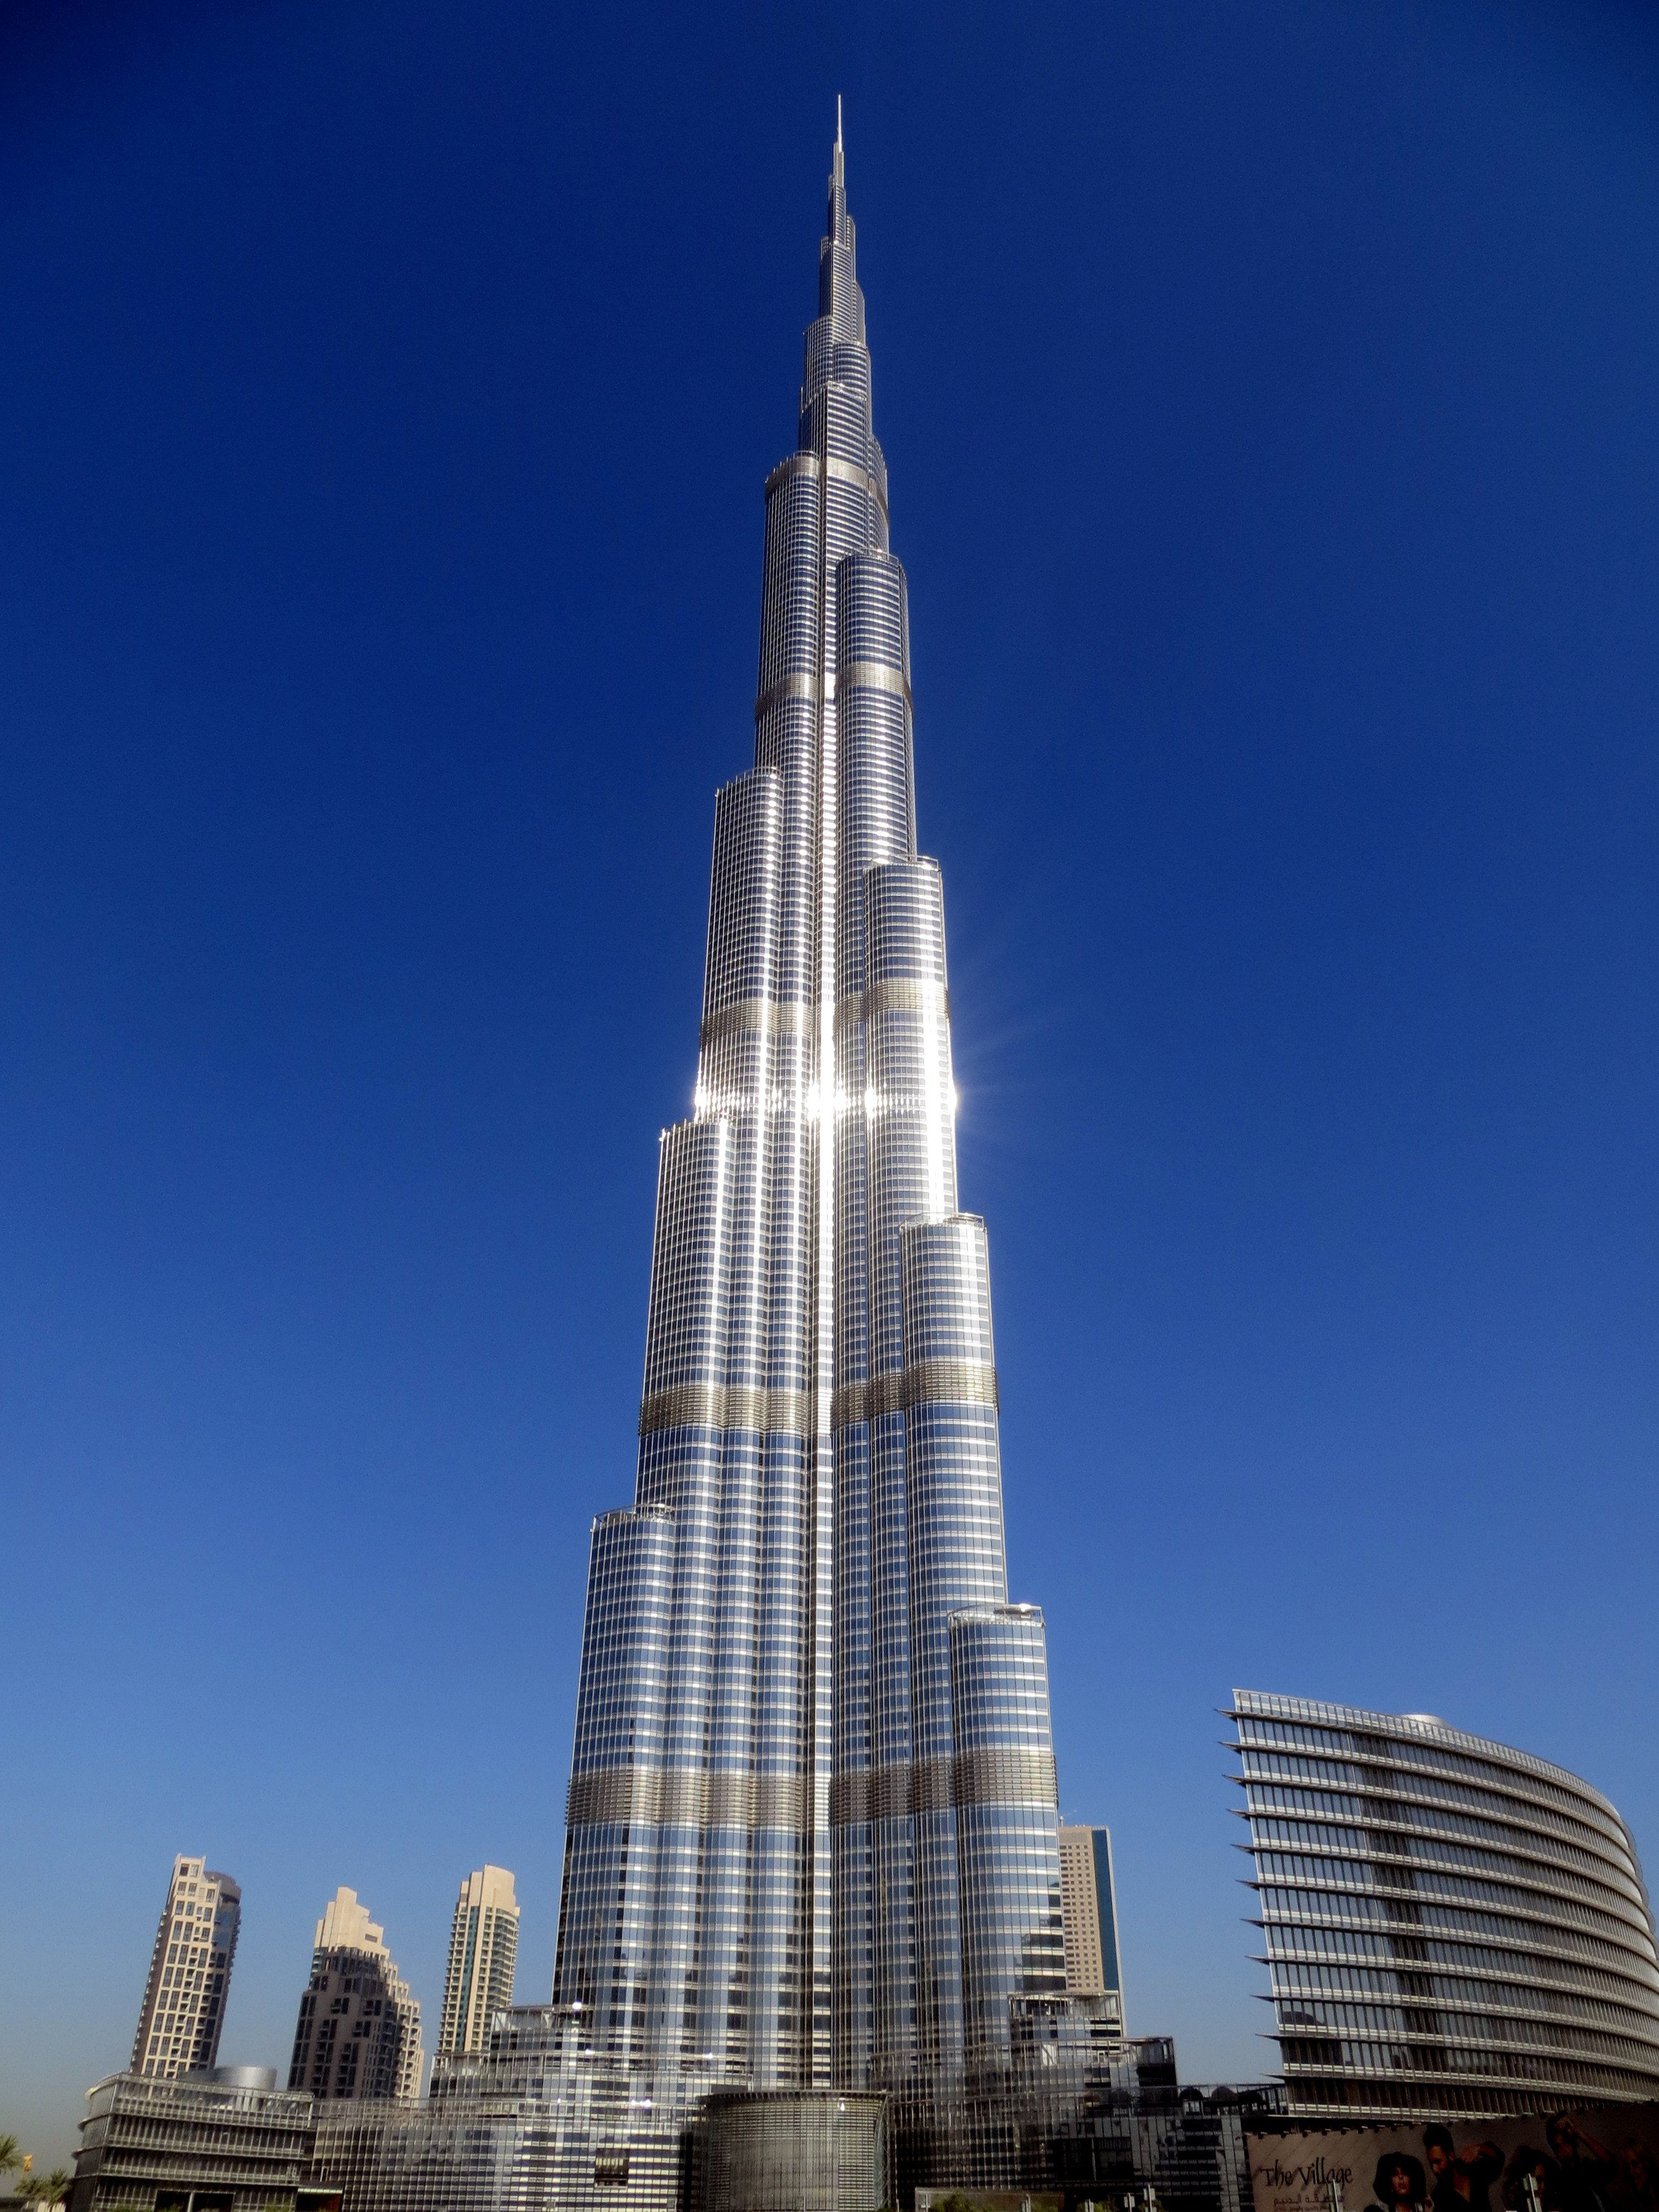 Бурчи халиф. Башня Бурдж Халифа в Дубае. Дубай здание Бурдж Халифа. Дубаи башня бершхалтфа. Бурдж-Халифа (828 м). Дубай, ОАЭ.